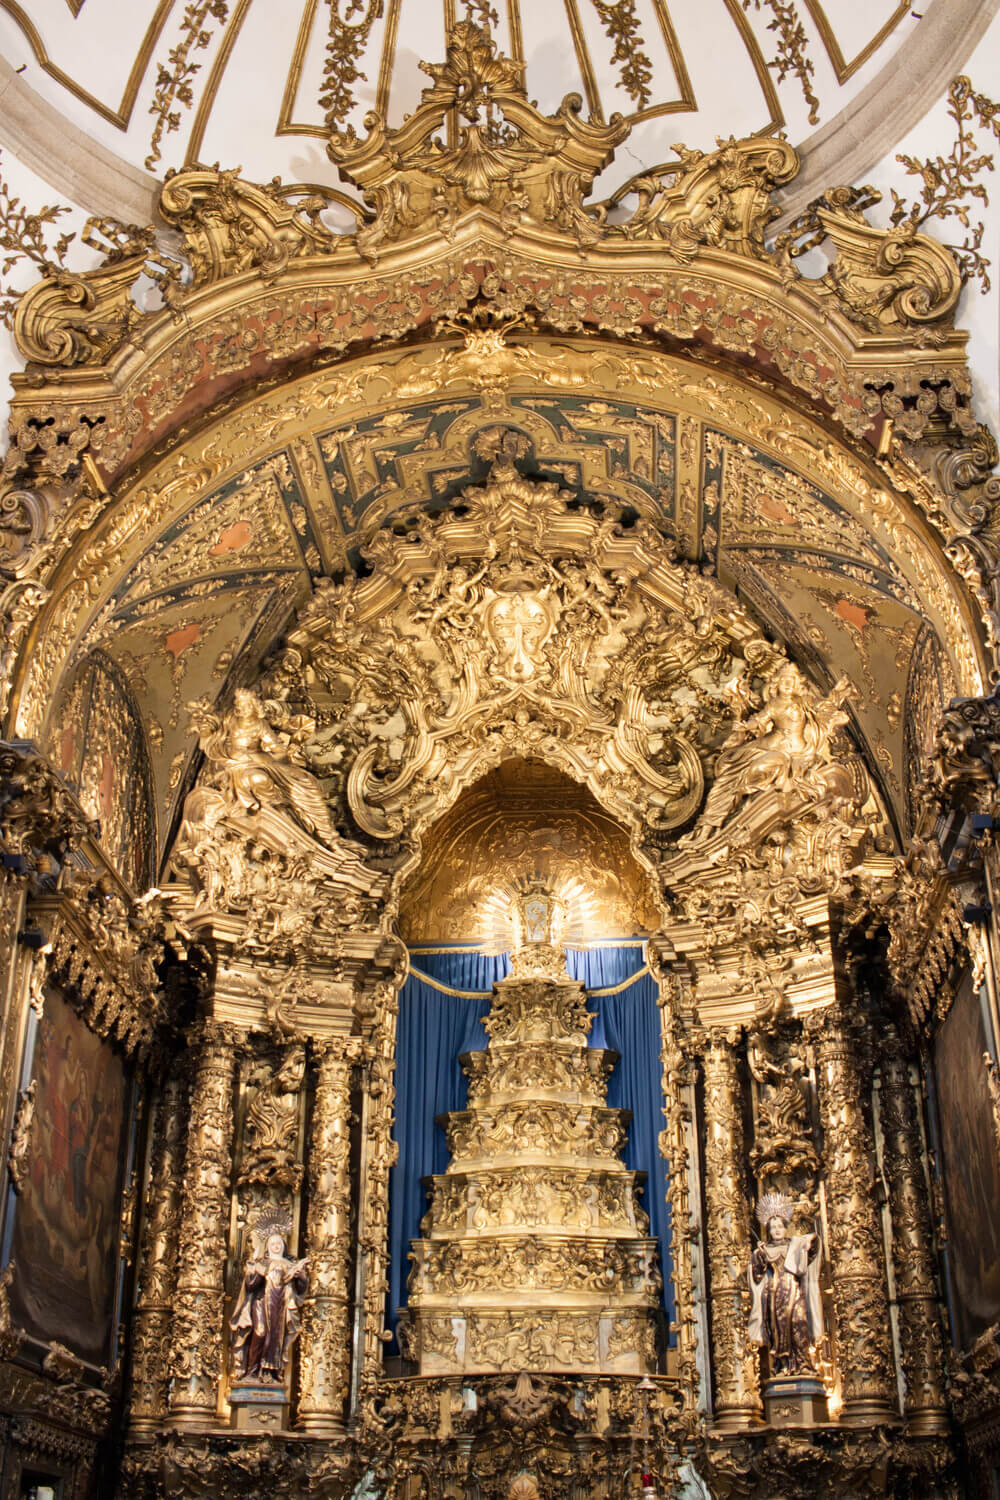 Igreja das Carmelitas in Porto, Portugal - Inside view.